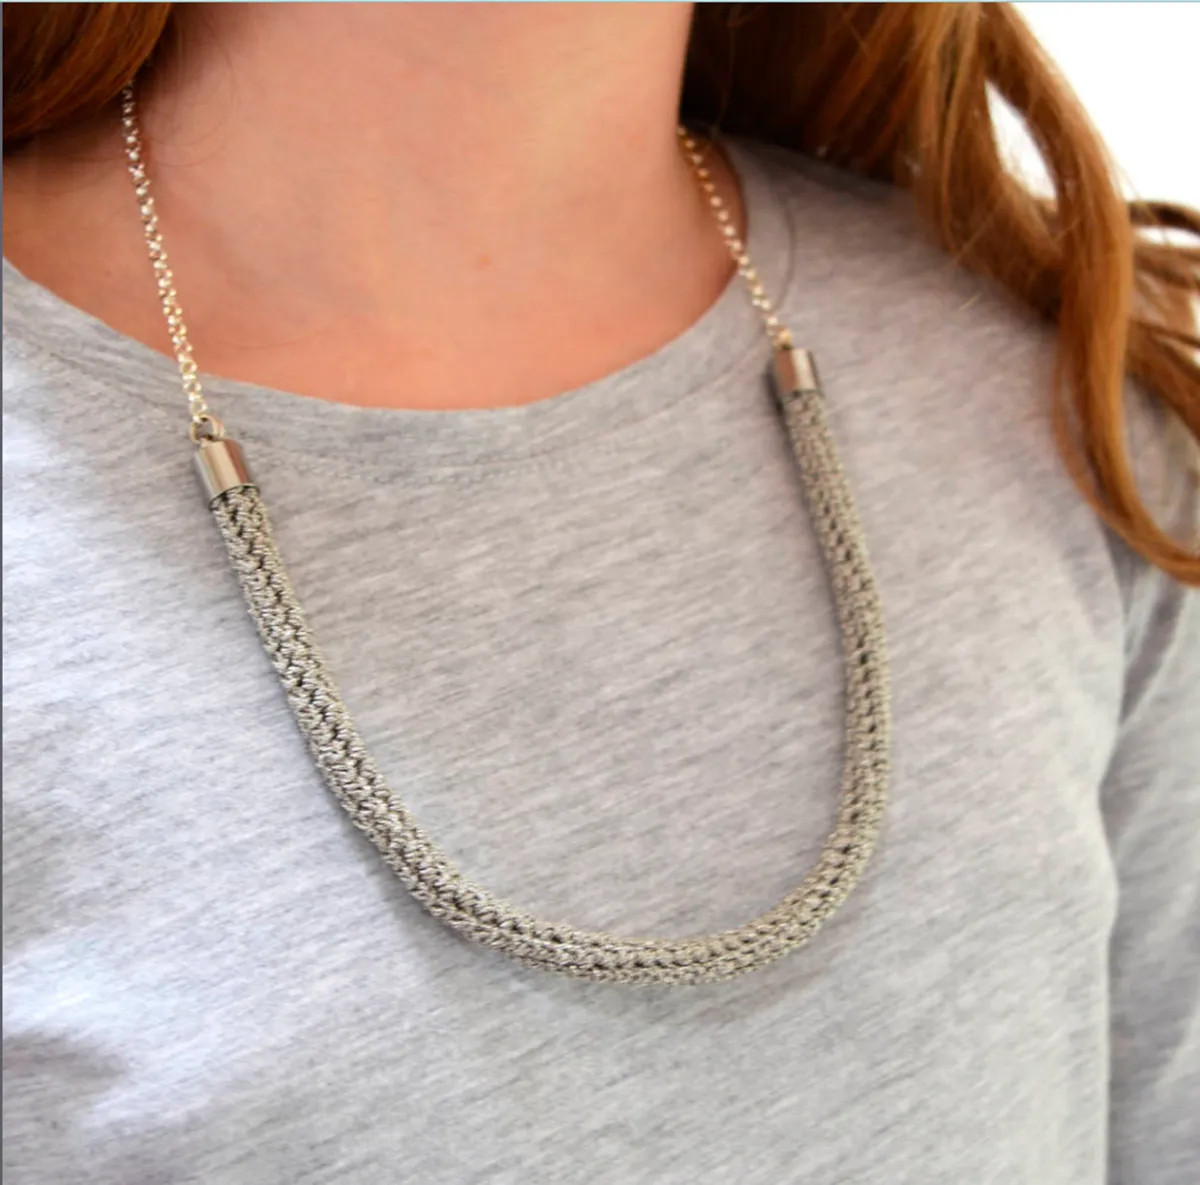 Silver crochet necklace kit